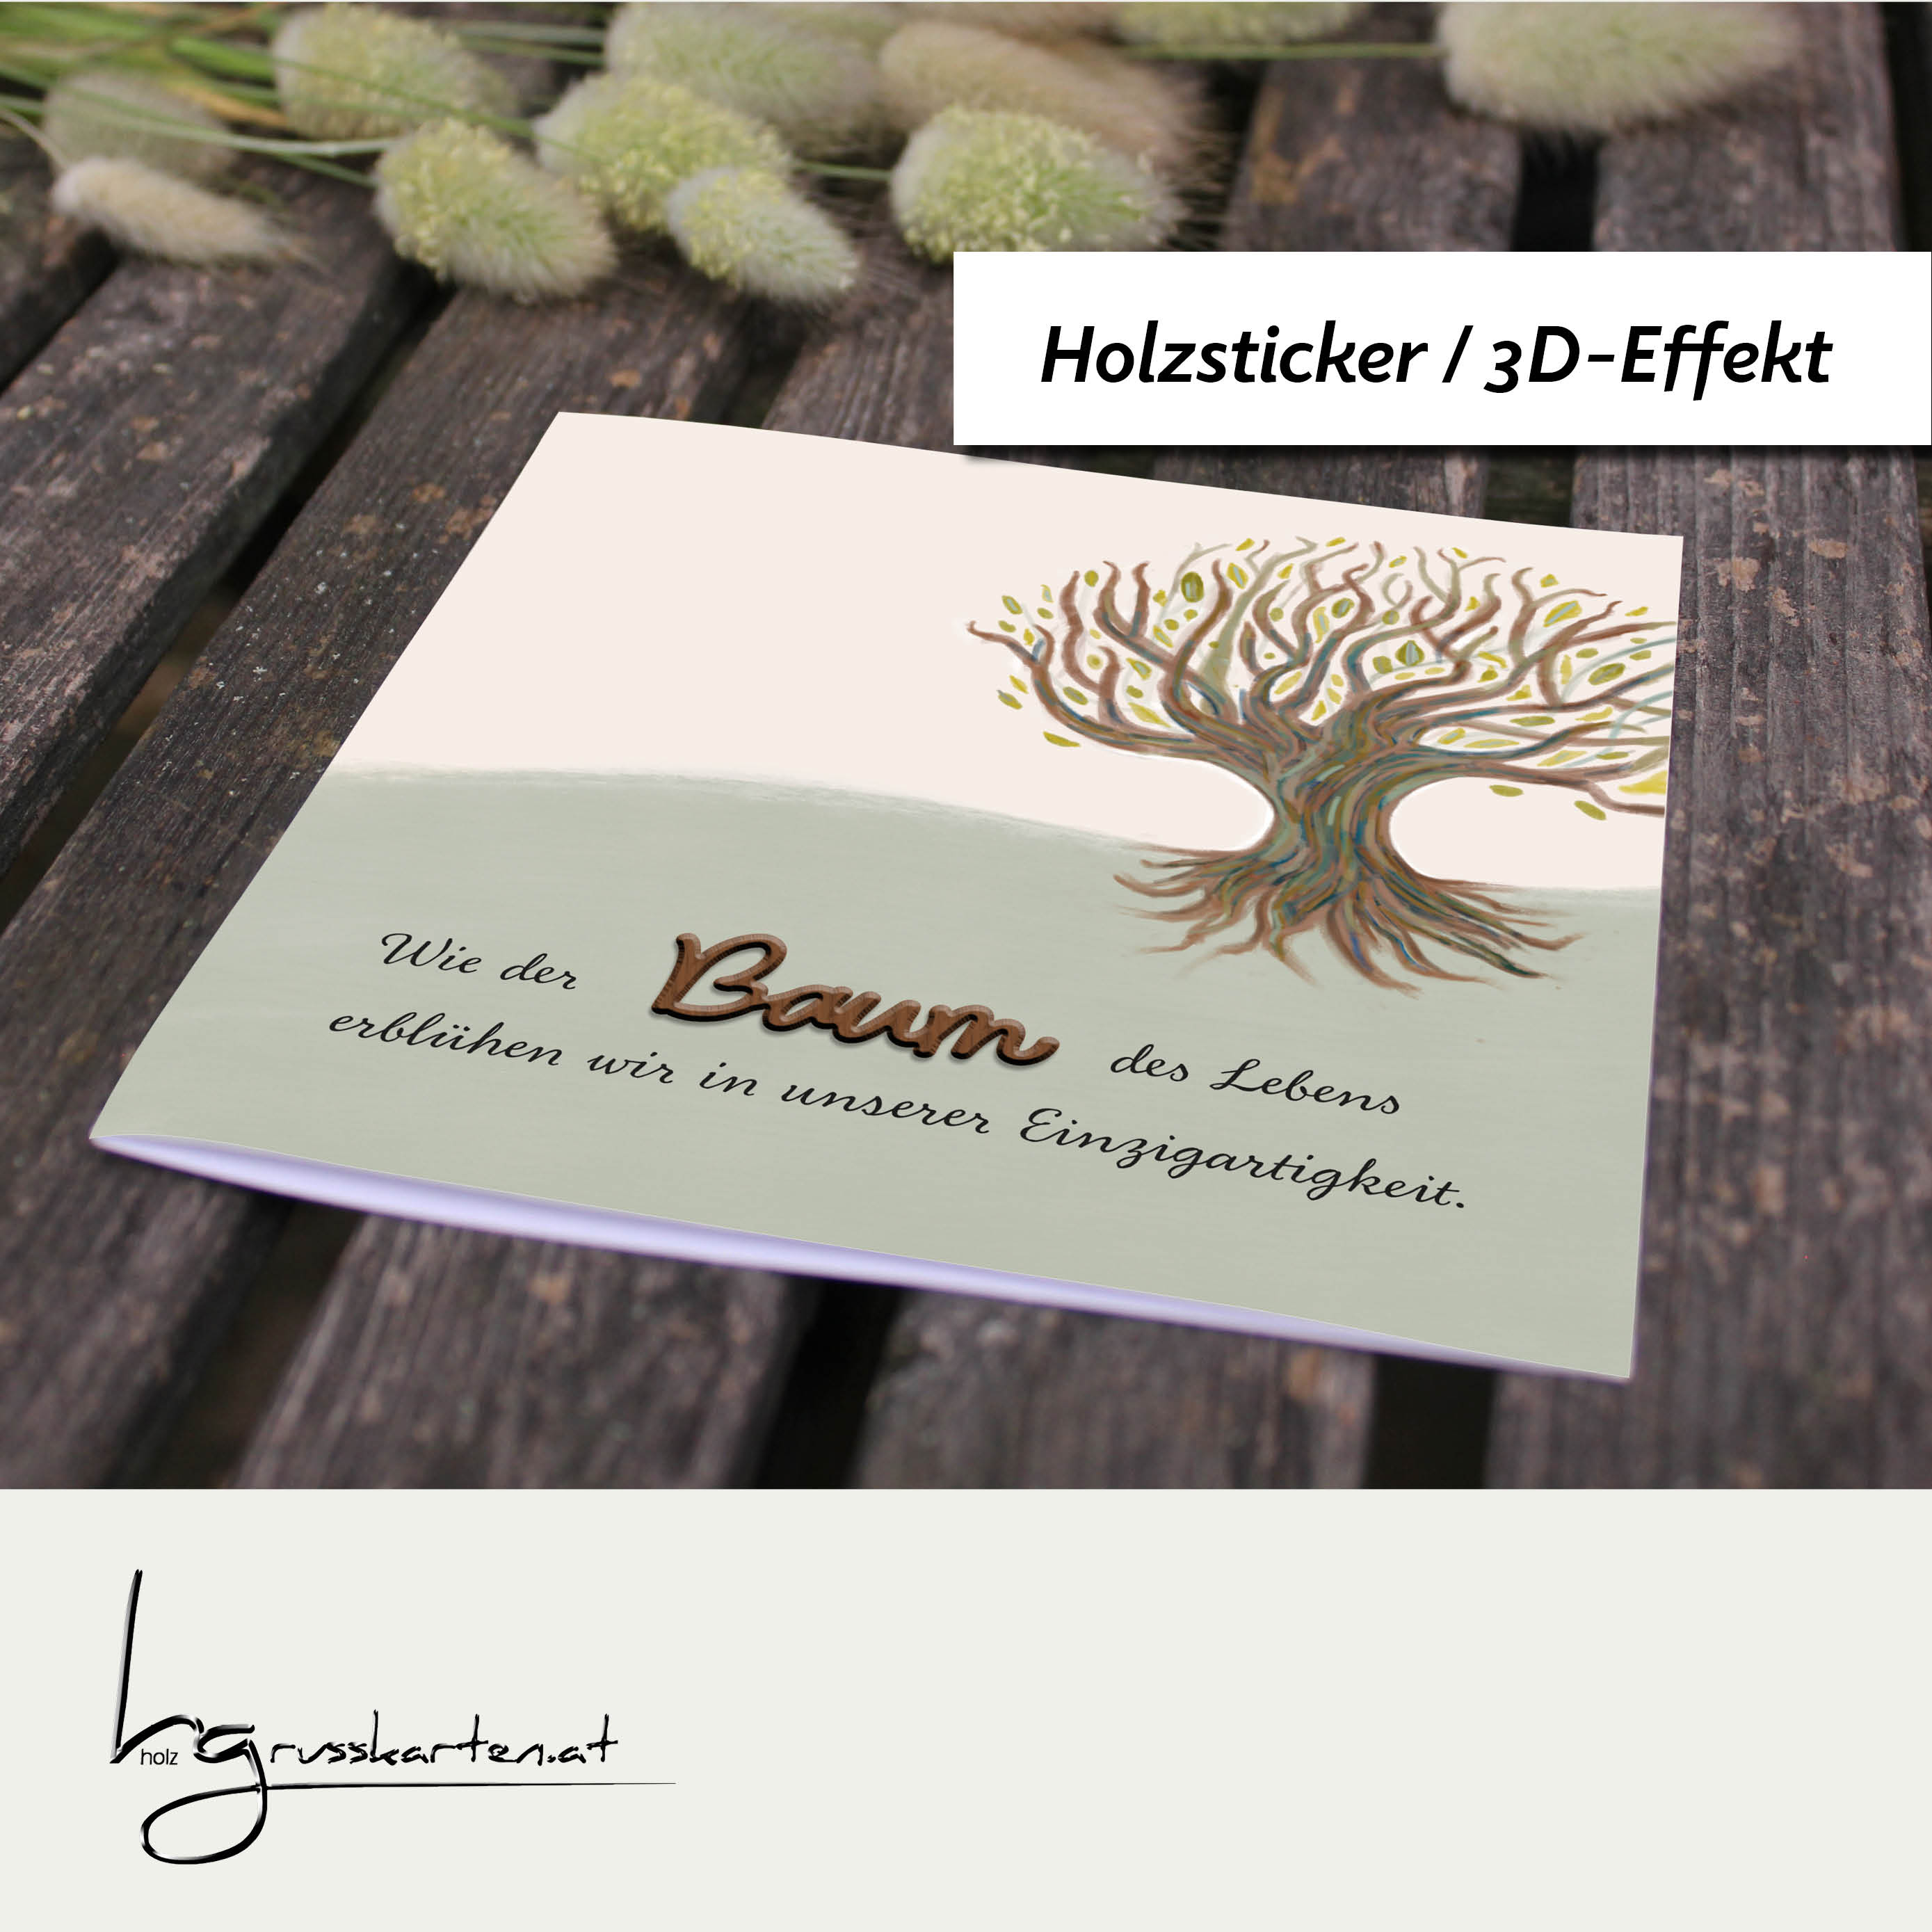 Holzgrusskarten - Geschenkkarte, Glückwunschkarte "Baum des Lebens - Einzigartigkeit" aus Recyclingkarton mit aufgeklebtem "Baum" aus Nussholz